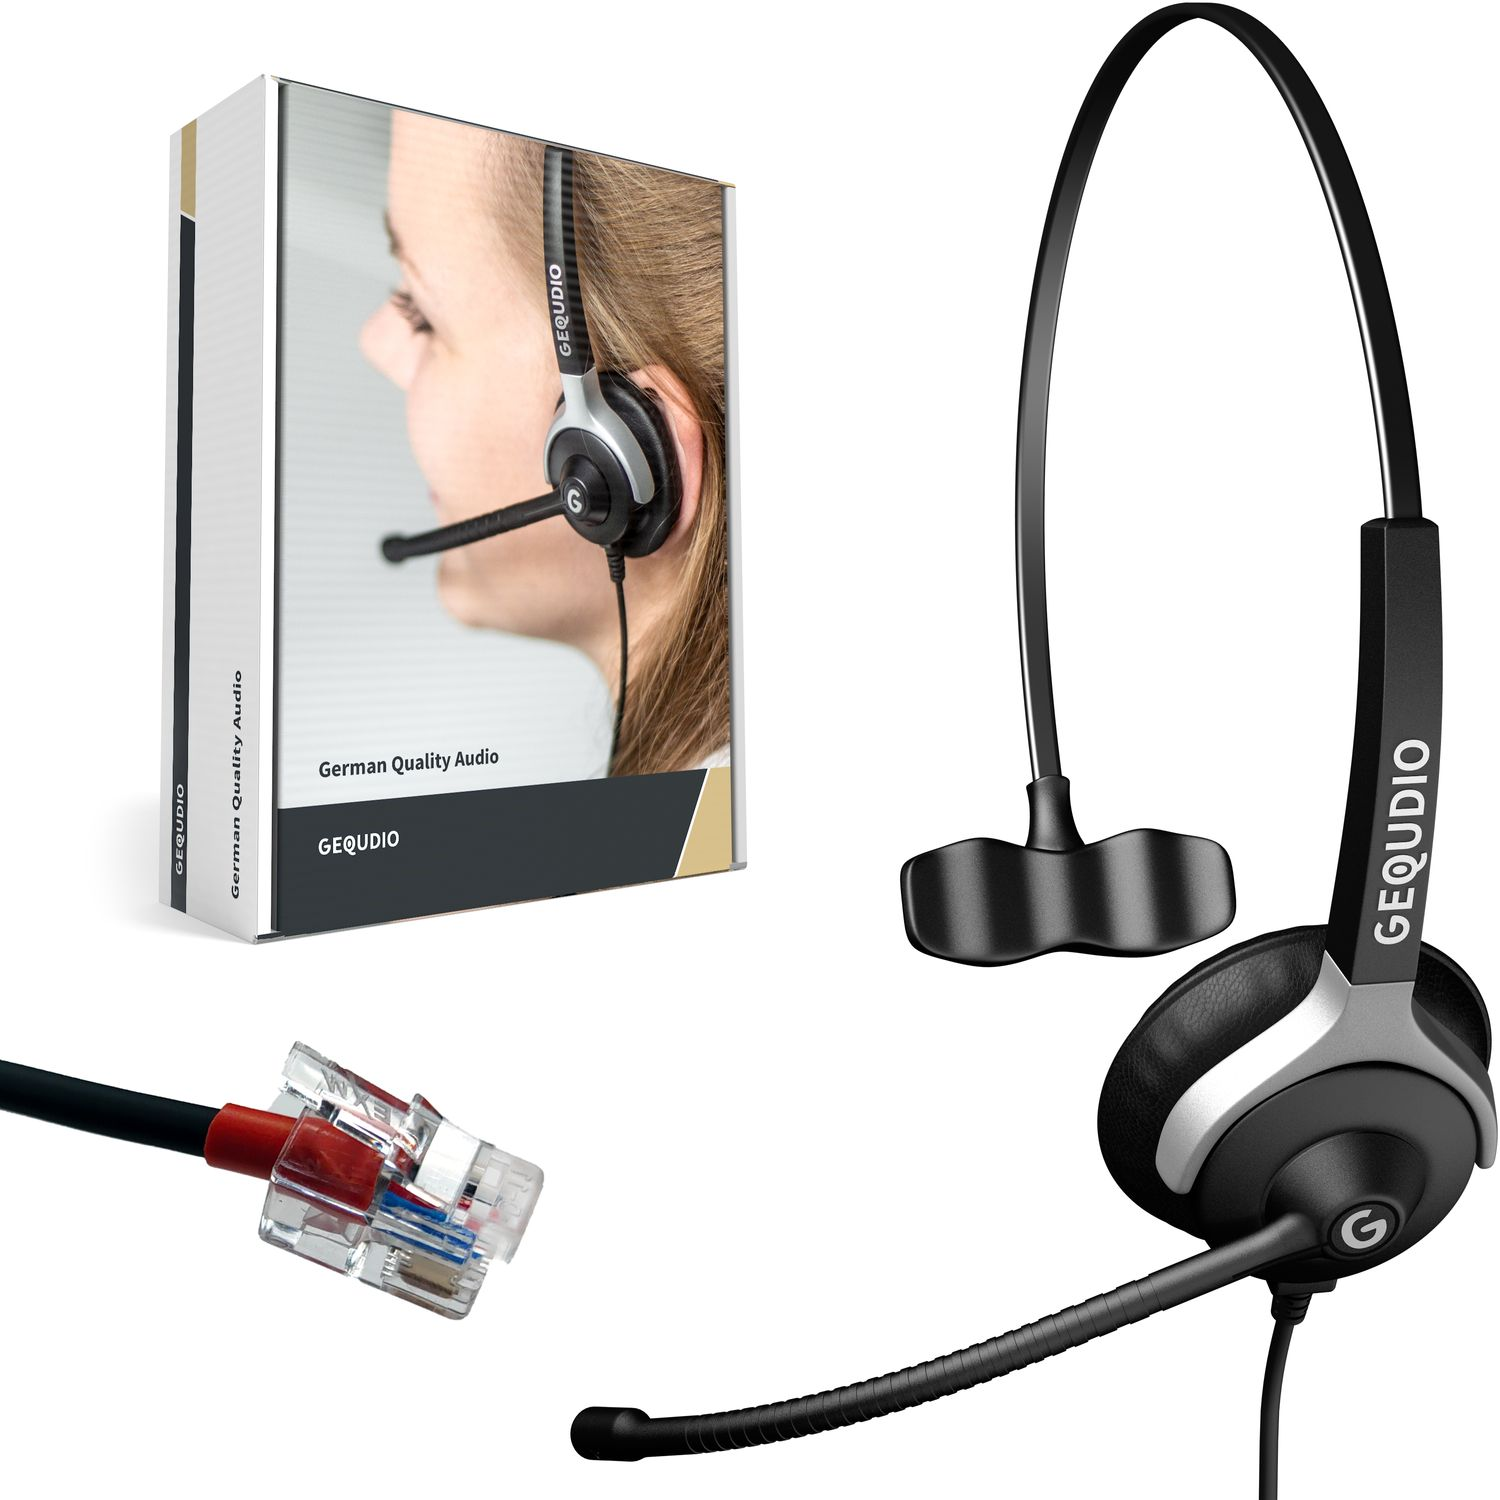 GEQUDIO Headset 1-Ohr für Yealink, Snom, On-ear mit Grandstream Headset Schwarz Kabel